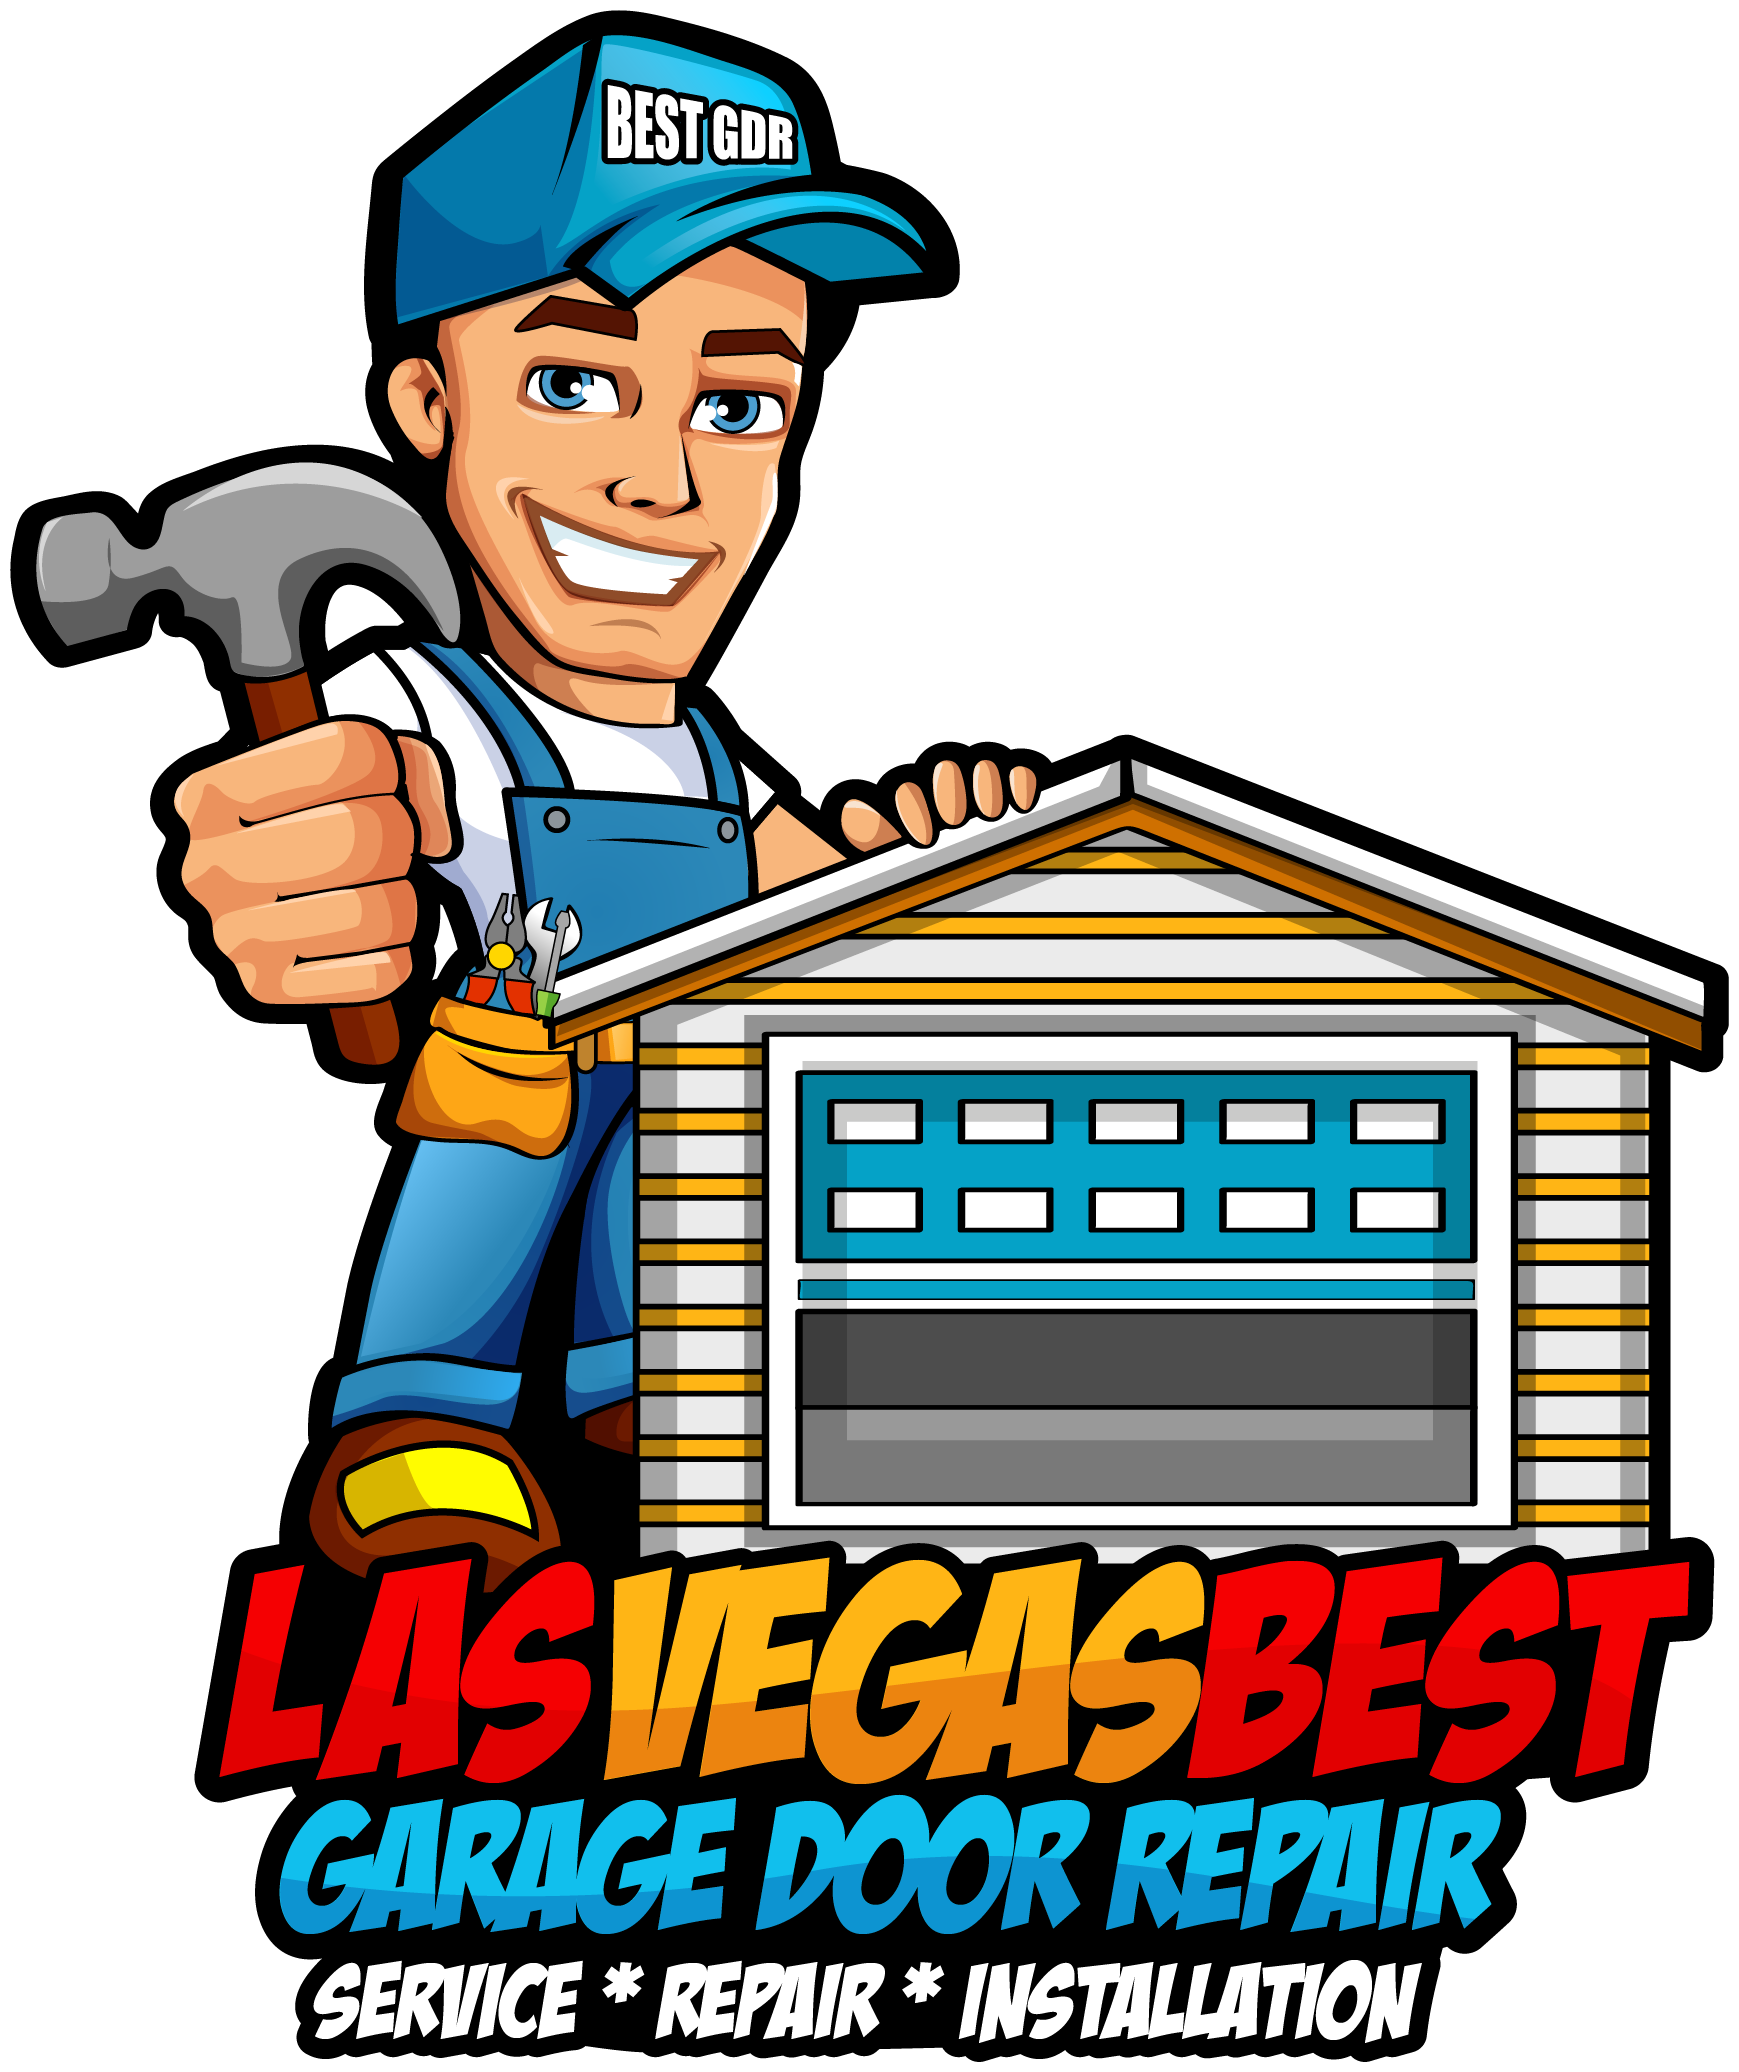 Las Vegas Best Garage logo